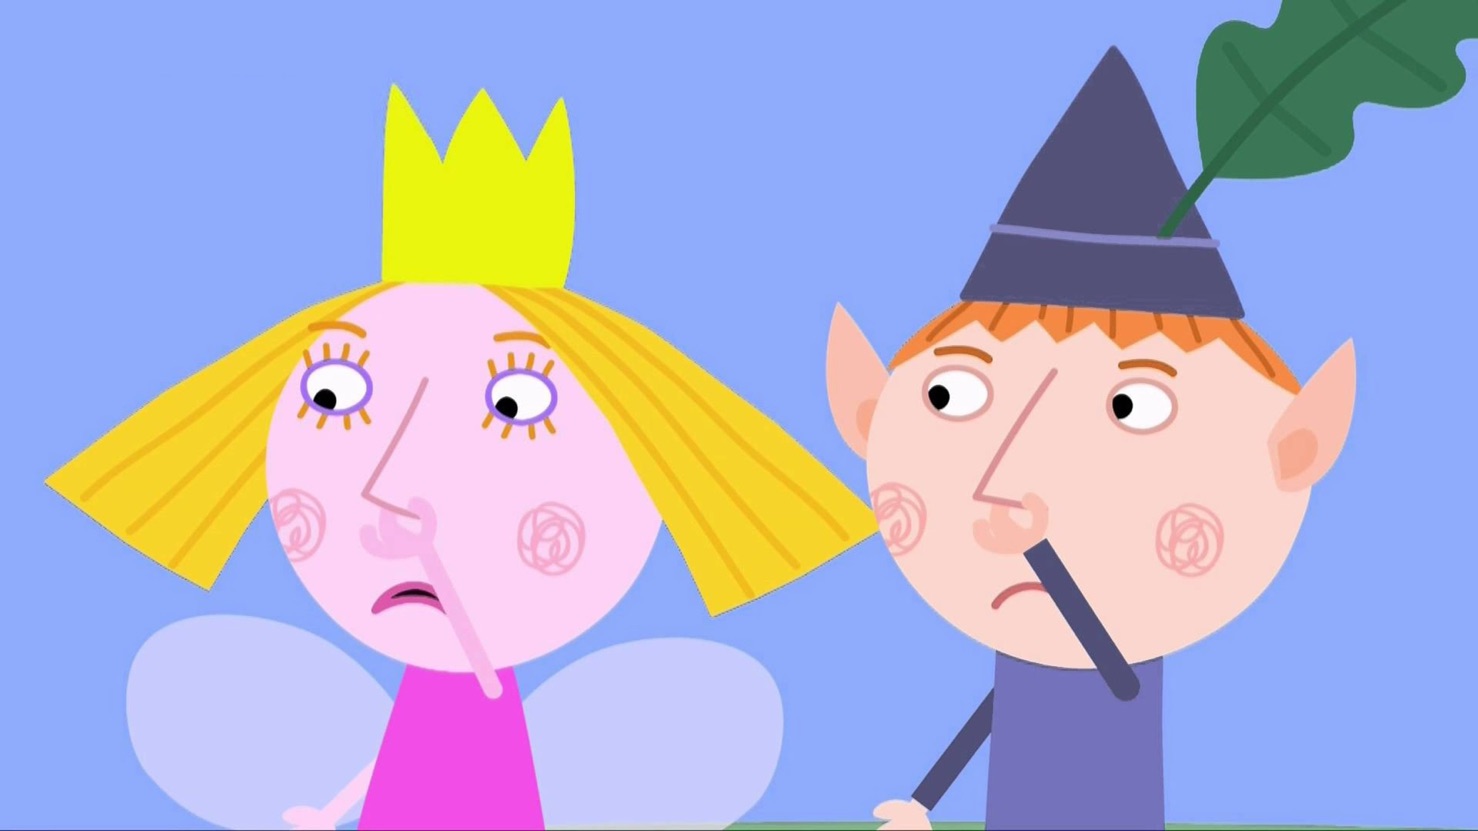 دانلود بن اند هالی زبان اصلی فصل اول - قسمت 1 - The Royal Fairy Picnic